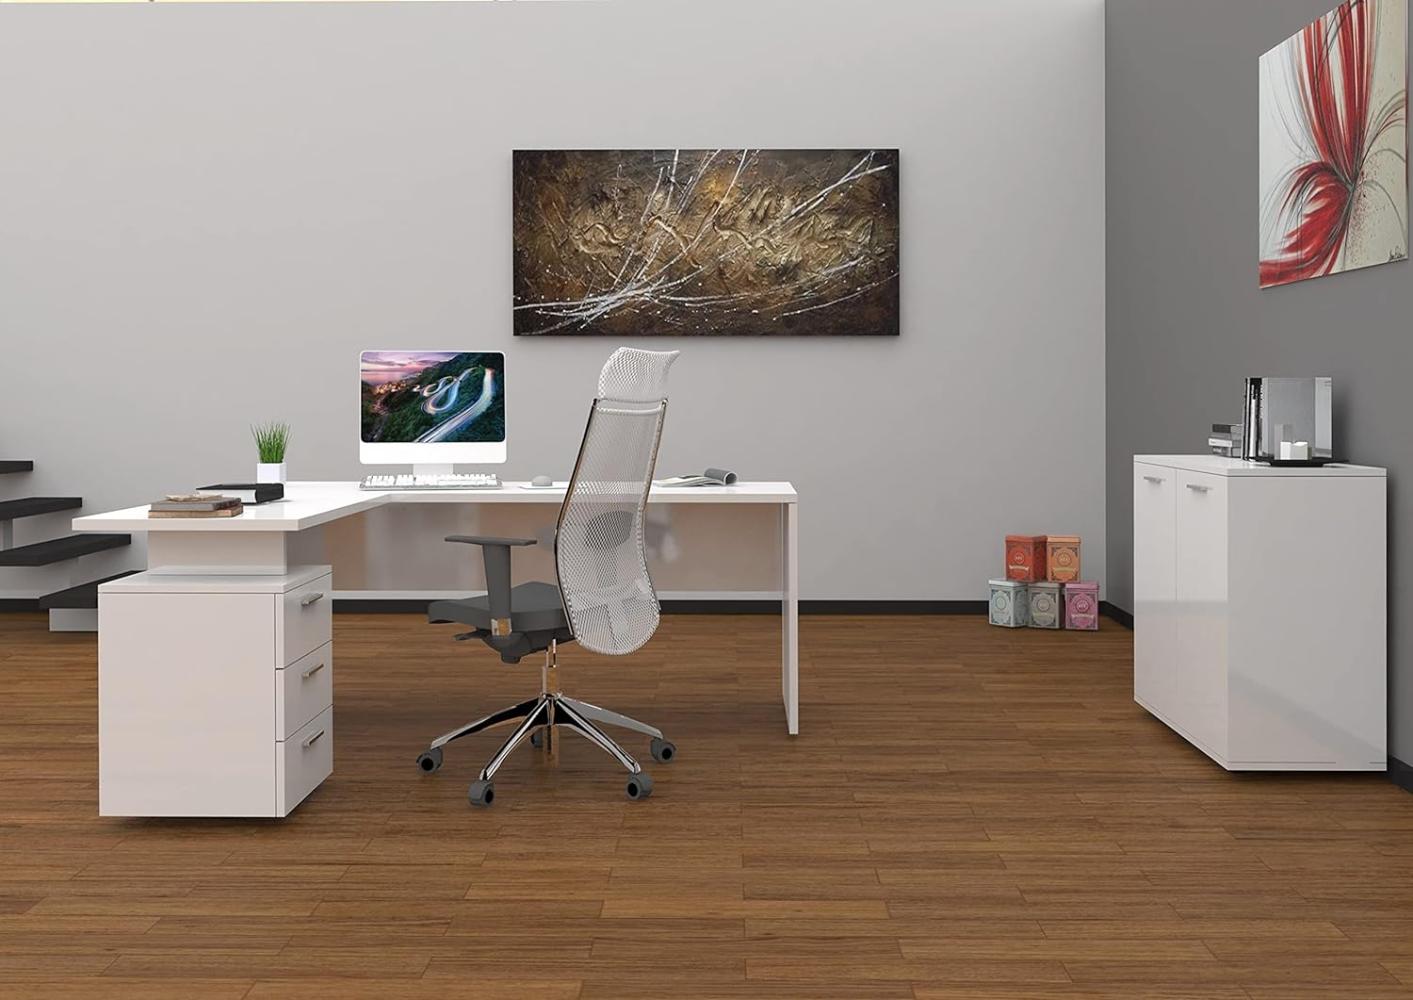 Dmora Eckschreibtisch, Made in Italy, Minimaler Computertisch, Schreibtisch für PC, 160x60h75 cm, glänzend weiße Farbe Bild 1